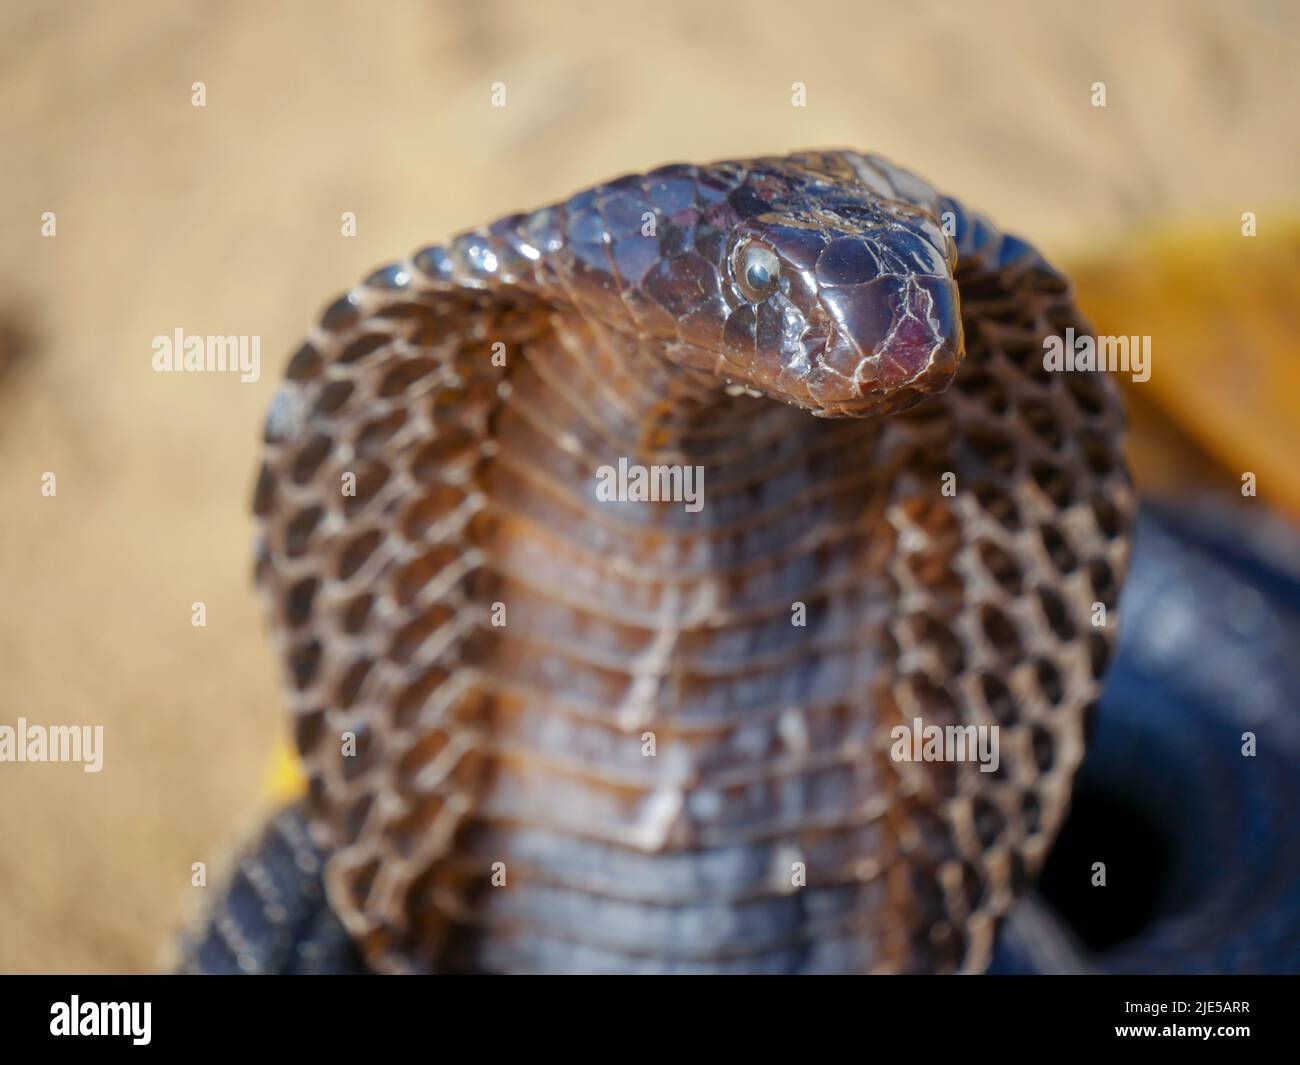 Cobra Snake mostrando capucha, primer plano, colocado en una cesta Foto de stock